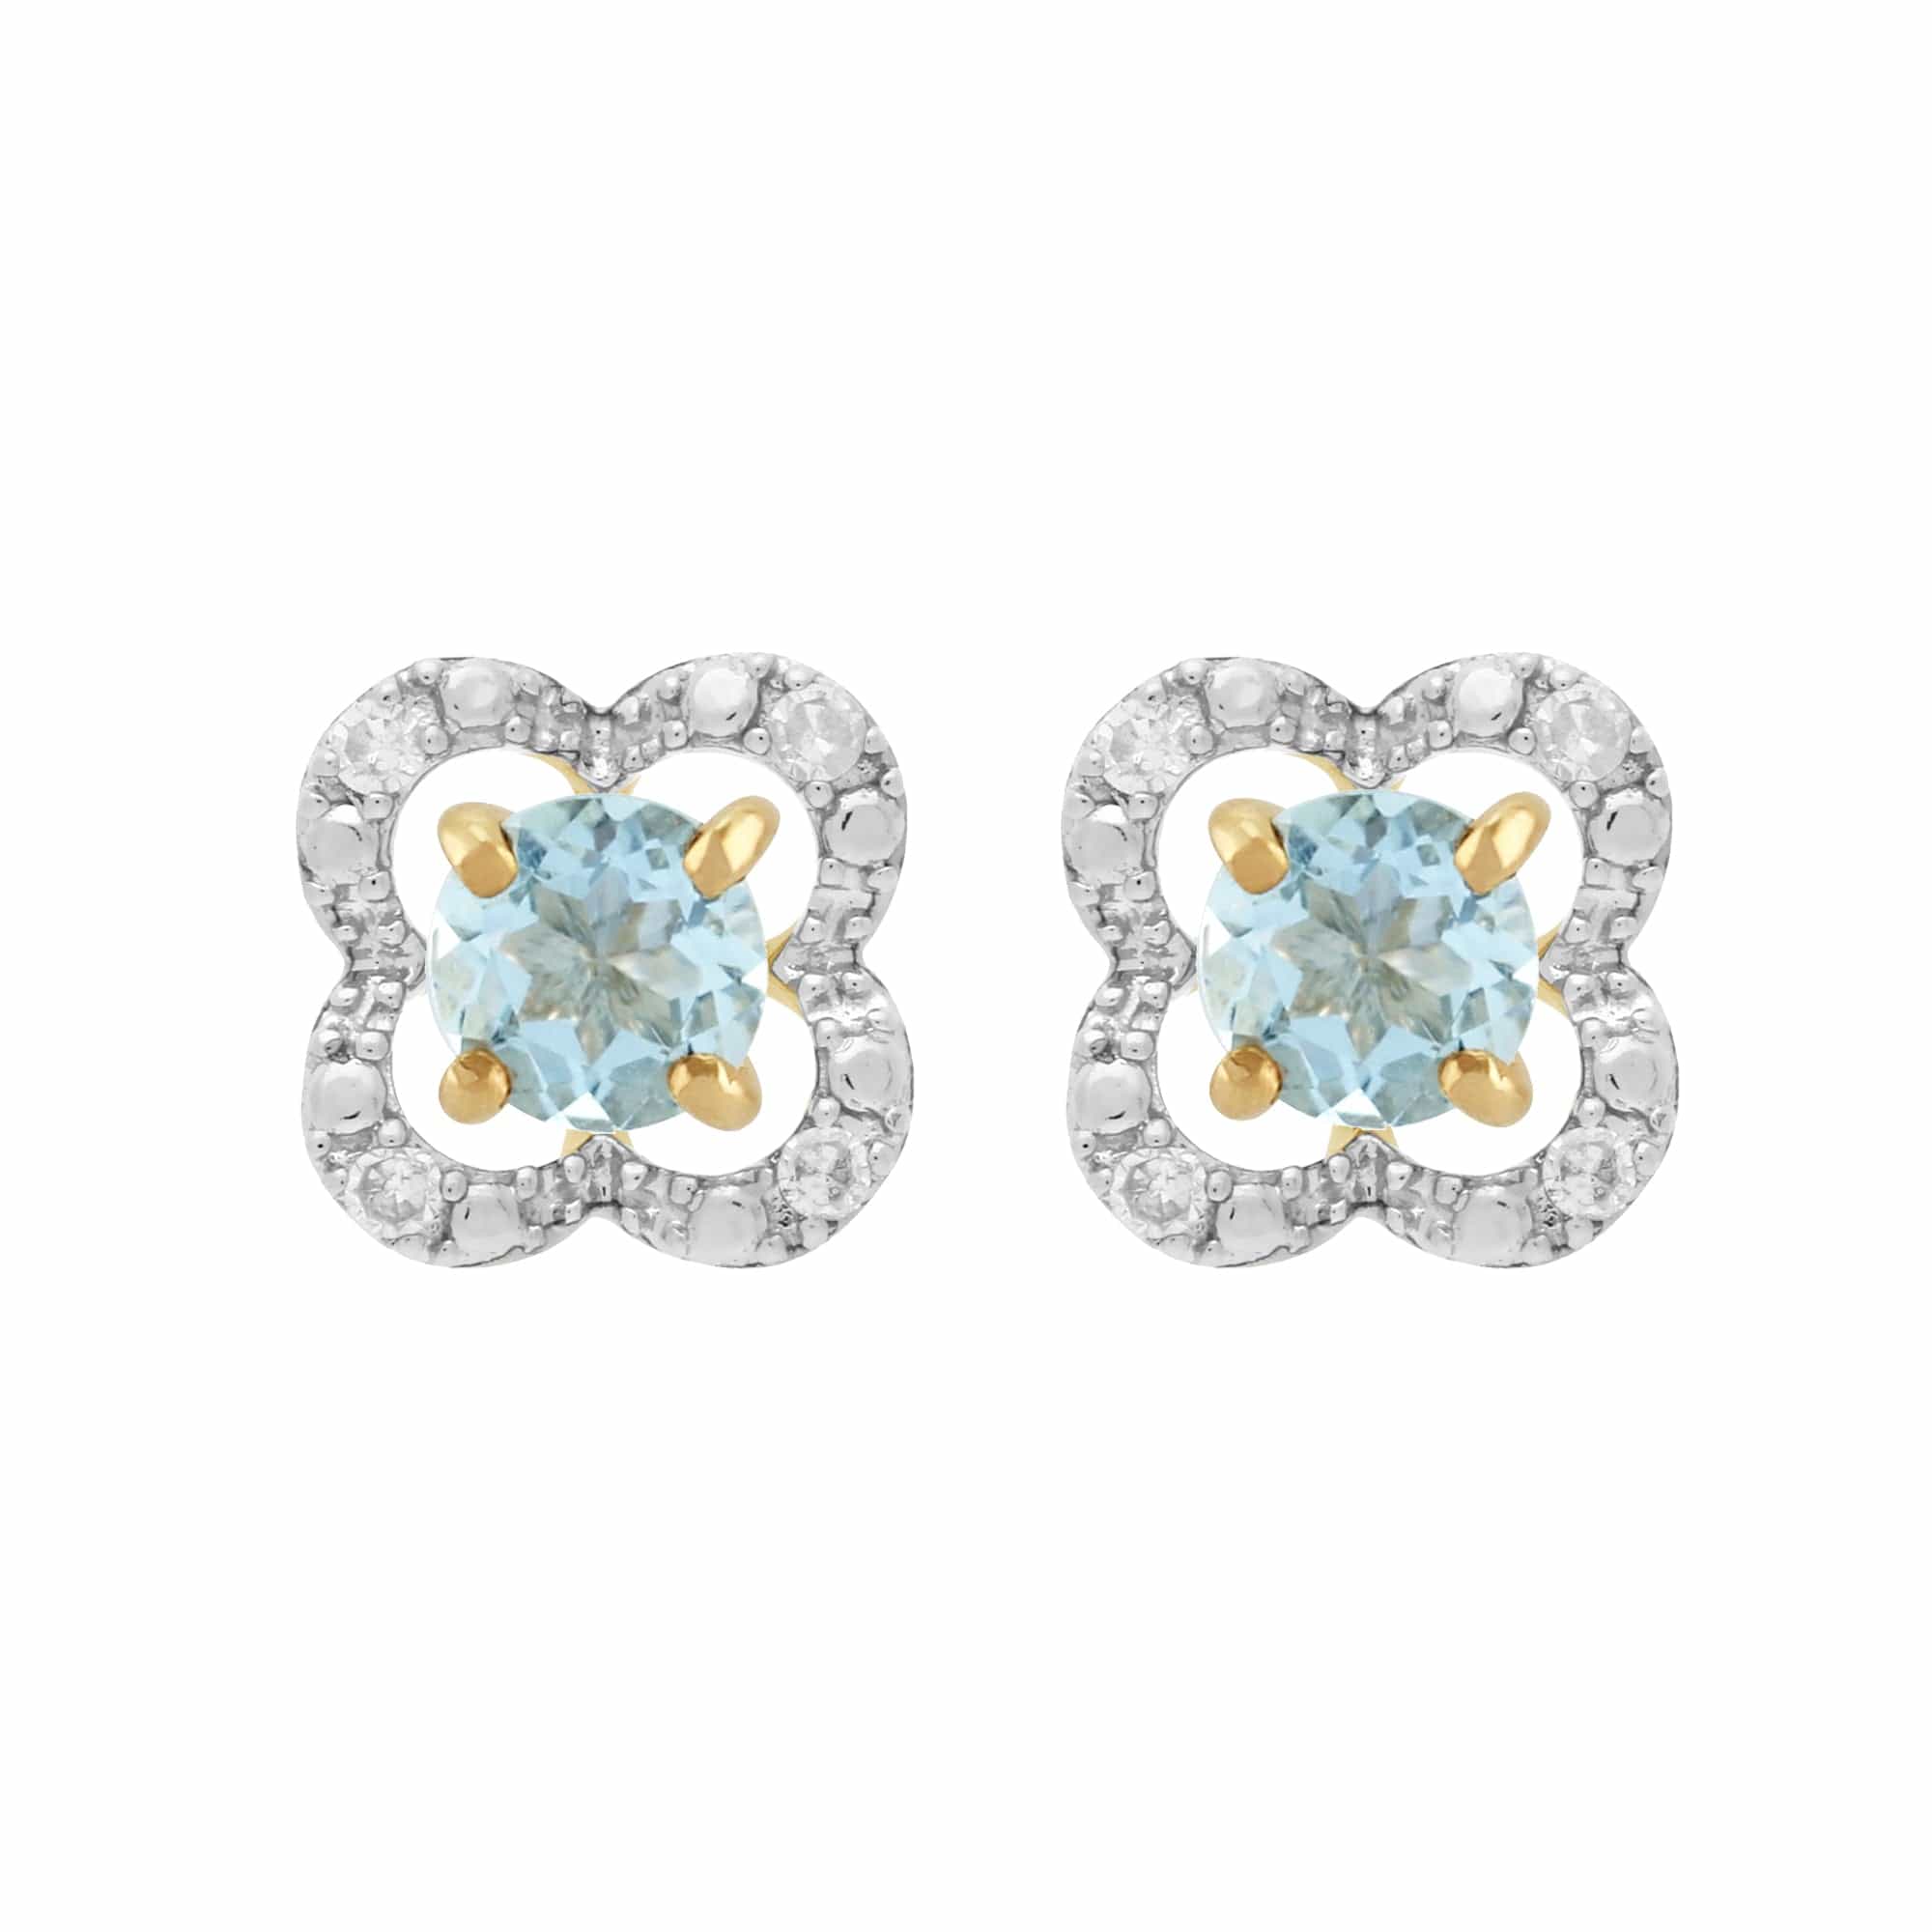 Classic Aquamarine Stud Earrings & Diamond Floral Ear Jacket Image 1 